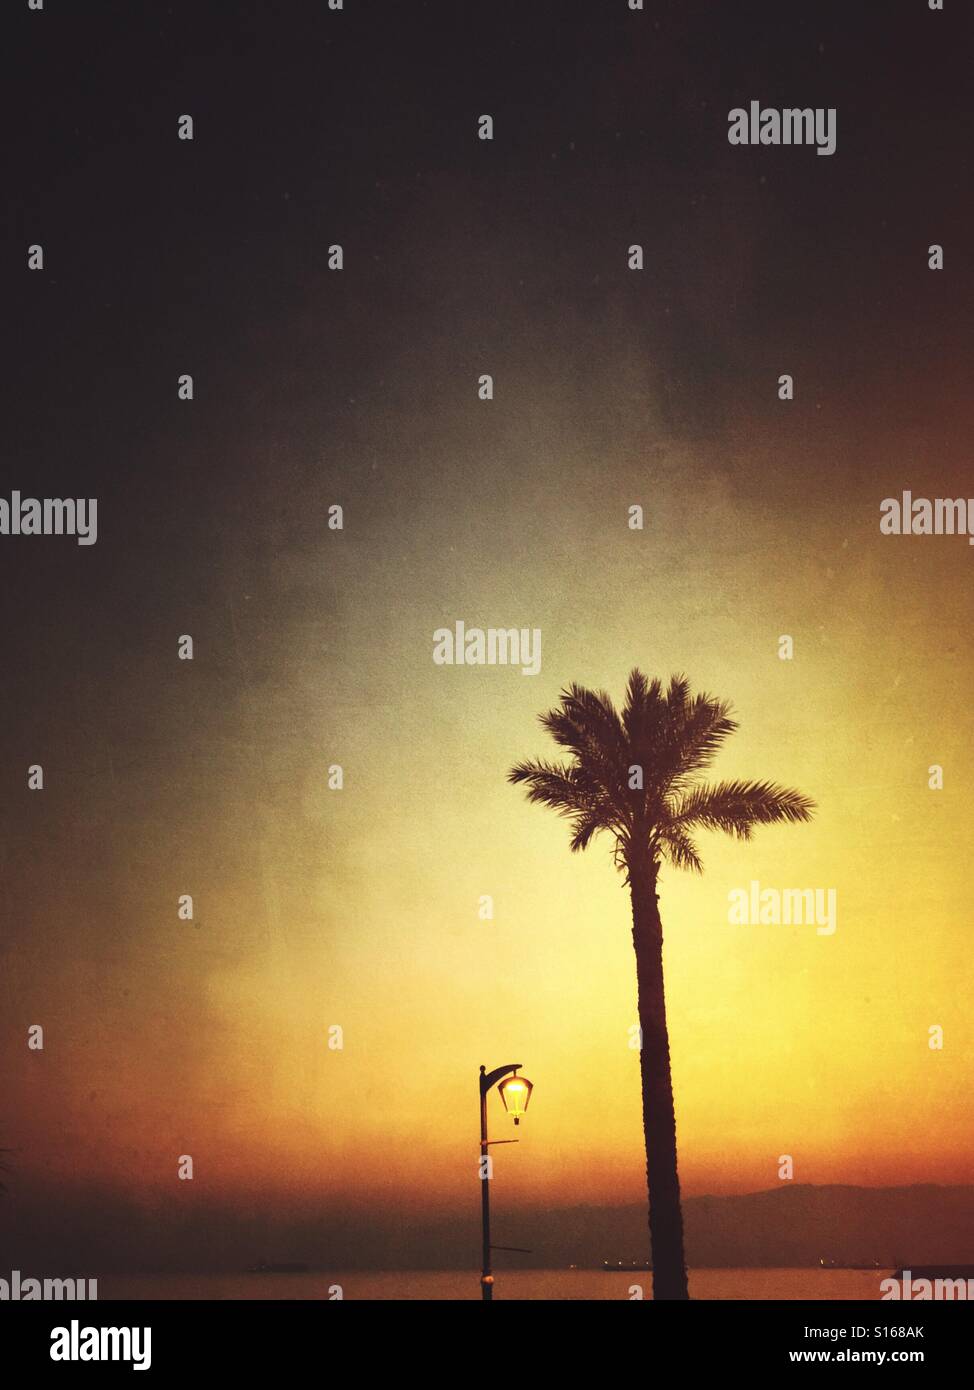 La silhouette du palmier et lampadaire au coucher du soleil Banque D'Images